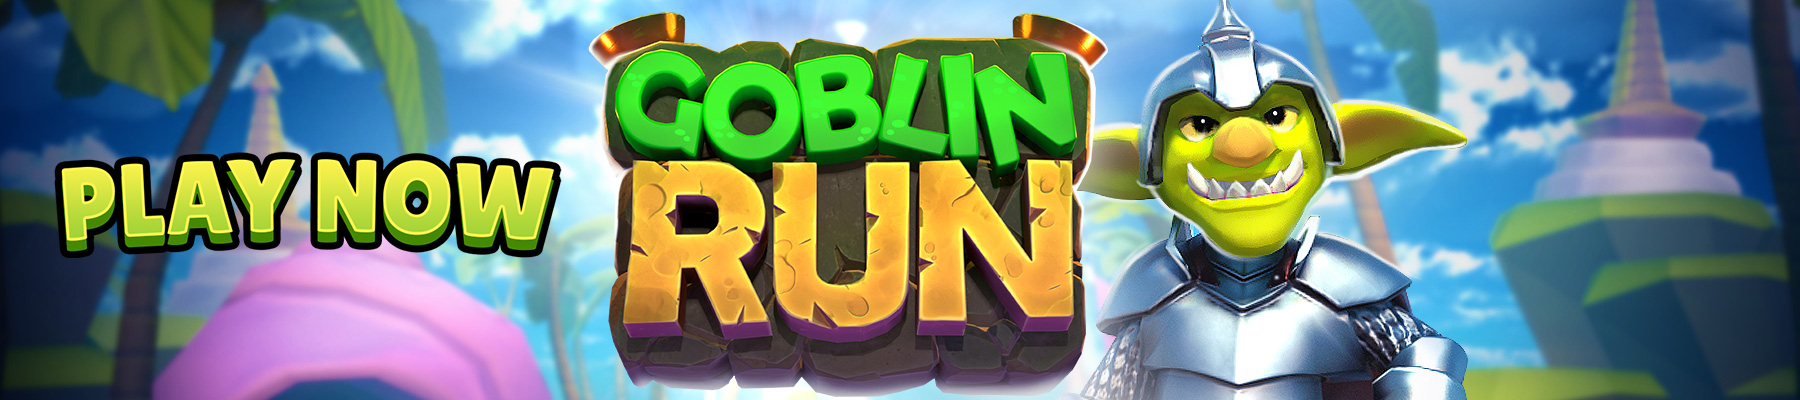 Spela Goblin Run nu